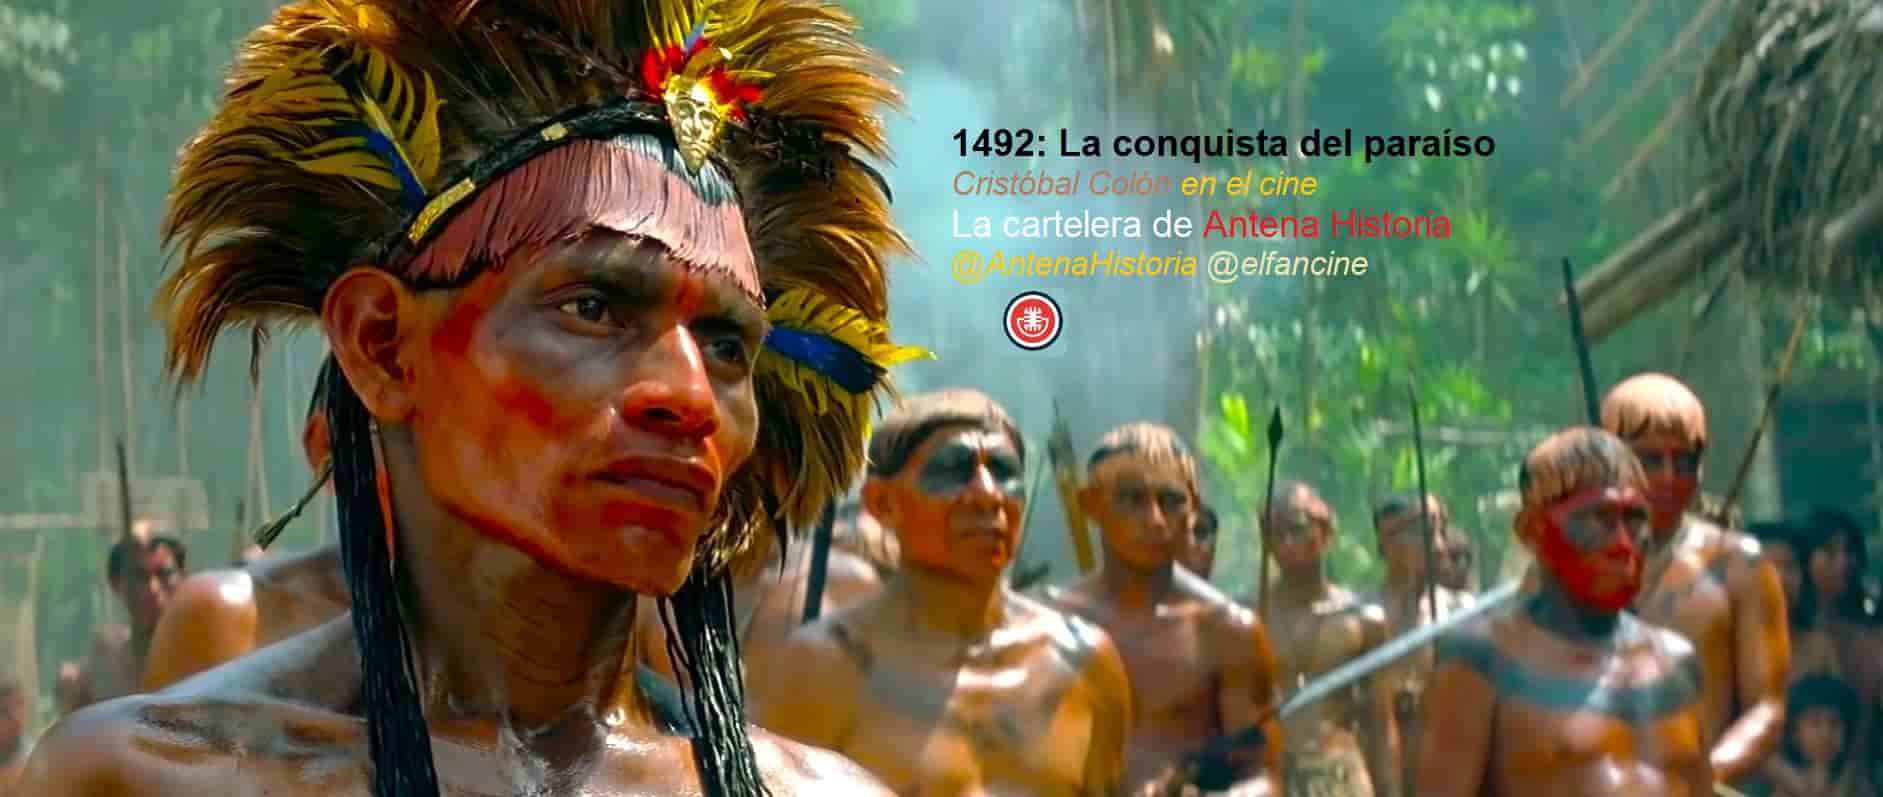 Descubrimiento de América en el cine - Bandera capitana de Cristóbal Colón - EXPO92 - el fancine - Antena Historia - Día de la Hispanidad - Matalascañas